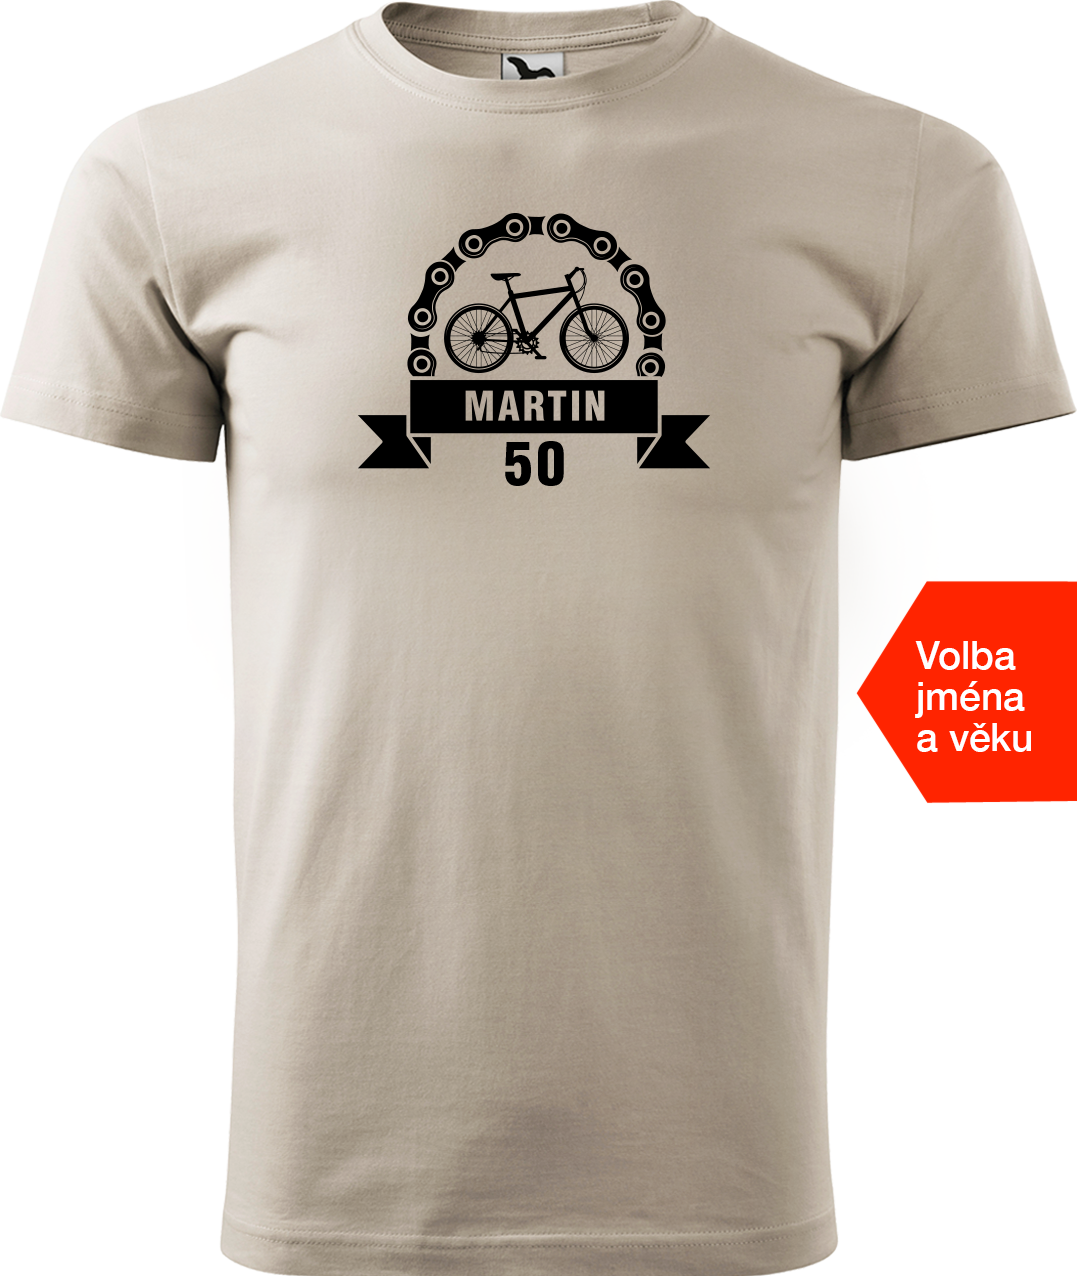 Pánské tričko pro cyklistu se jménem a věkem - Blahopřání Velikost: 4XL, Barva: Béžová (51)